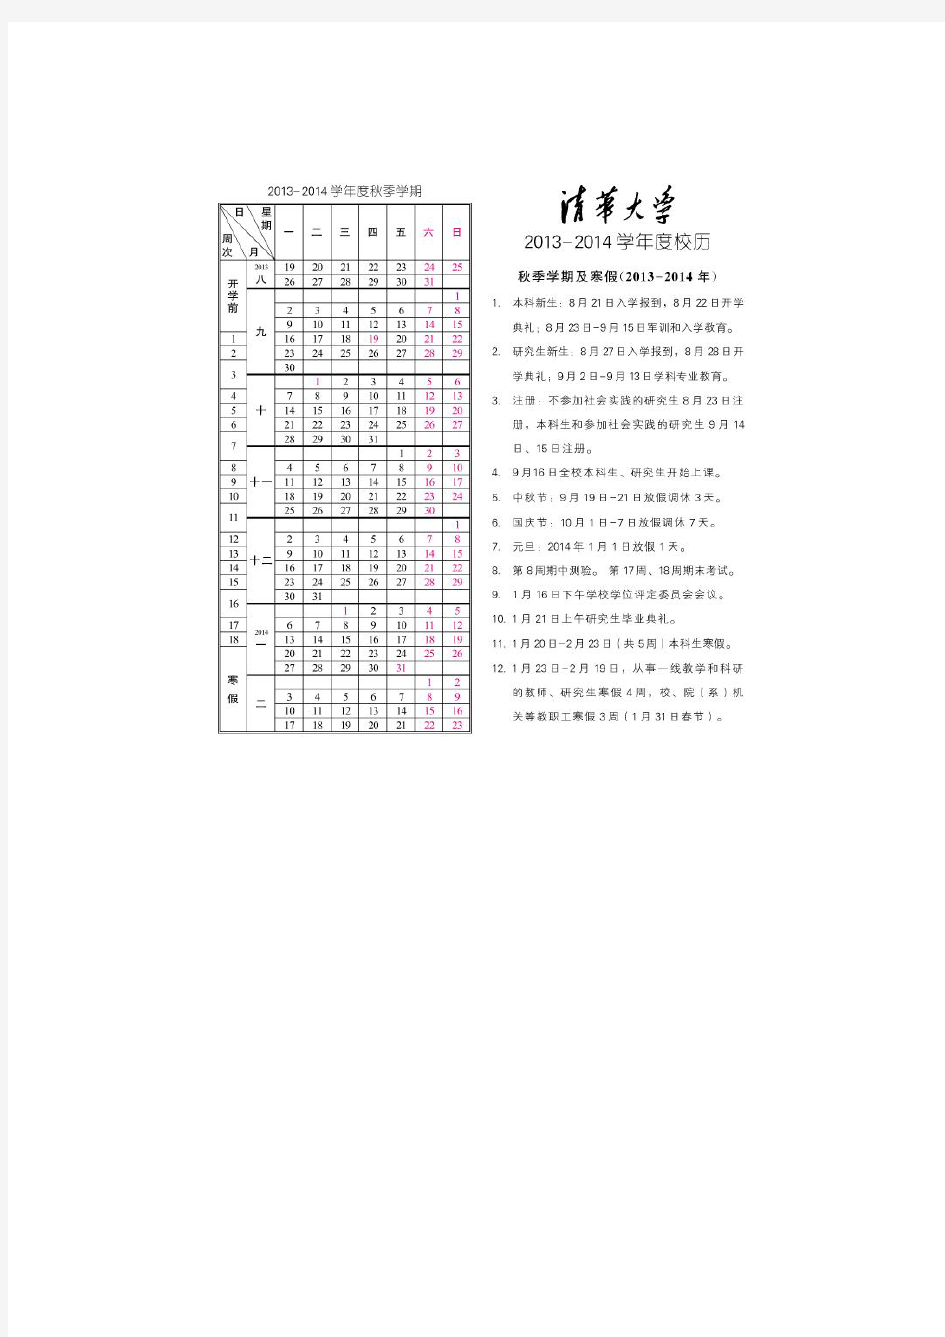 清华2013-2014校历